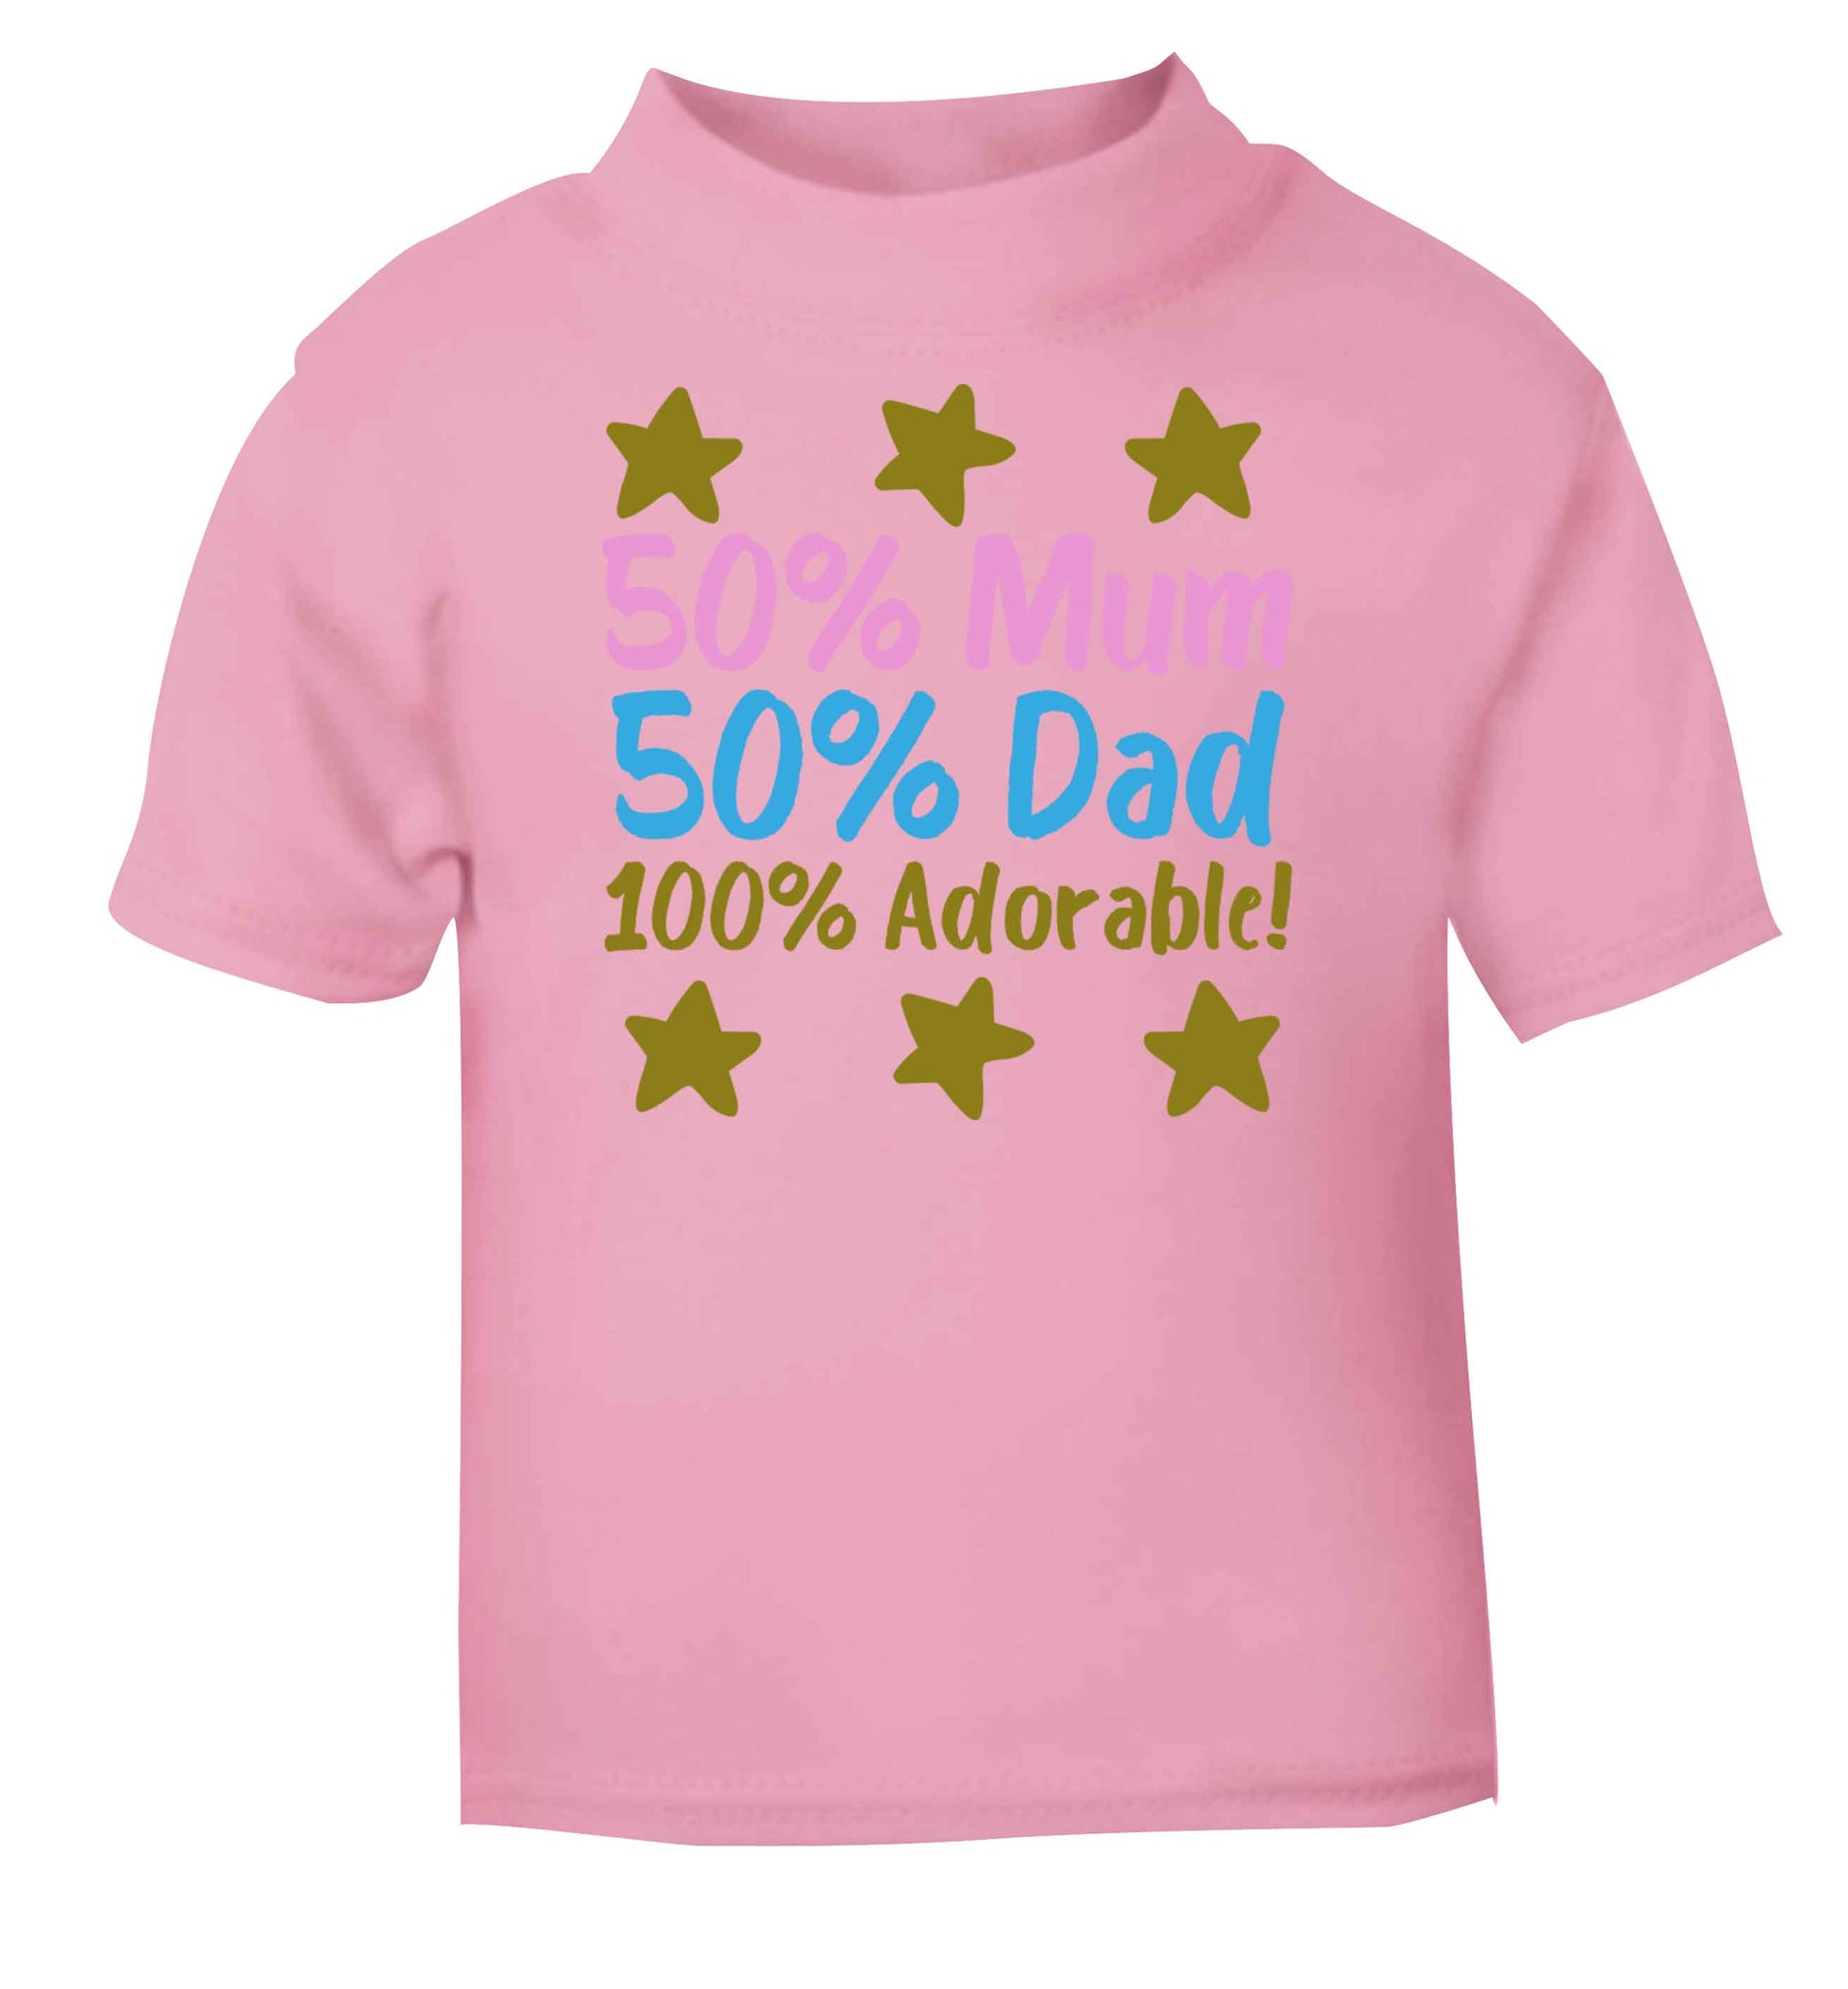 50% mum 50% dad 100% adorable light pink baby toddler Tshirt 2 Years